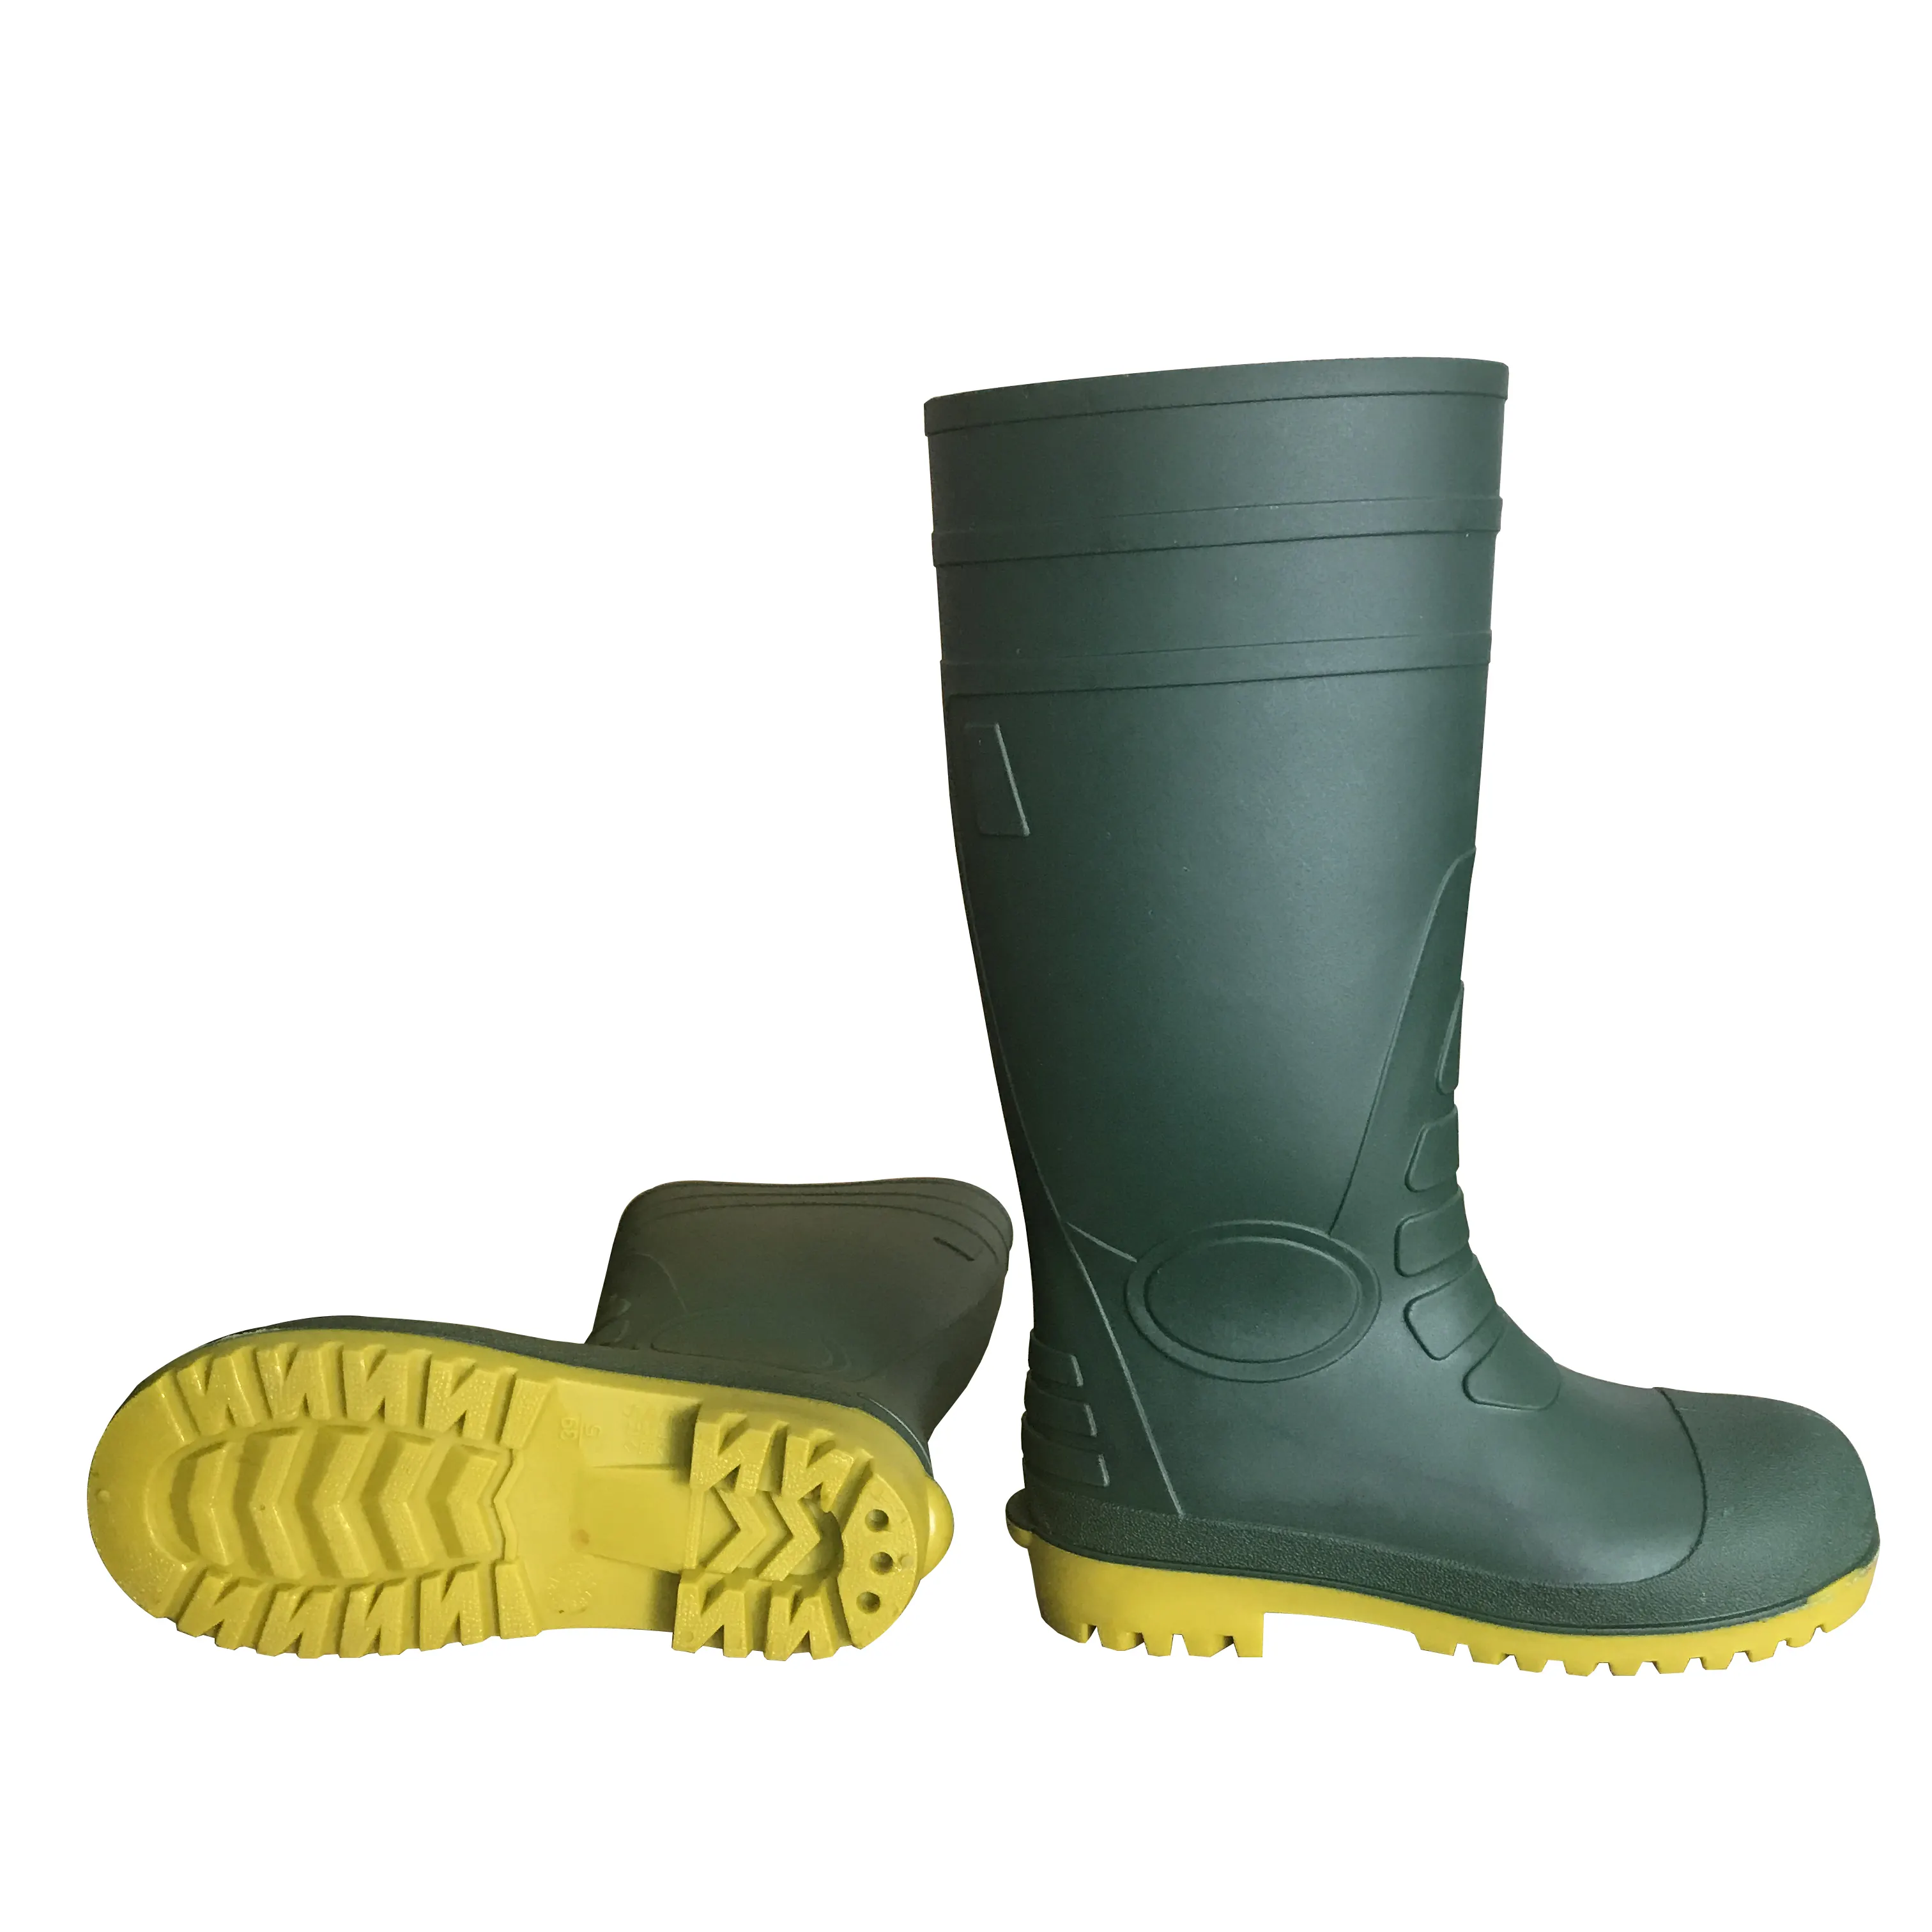 جودة عالية السعر المنخفض للماء الرجال العمل PVC سلامة جزمة احذية المطر مع الصلب اصبع القدم